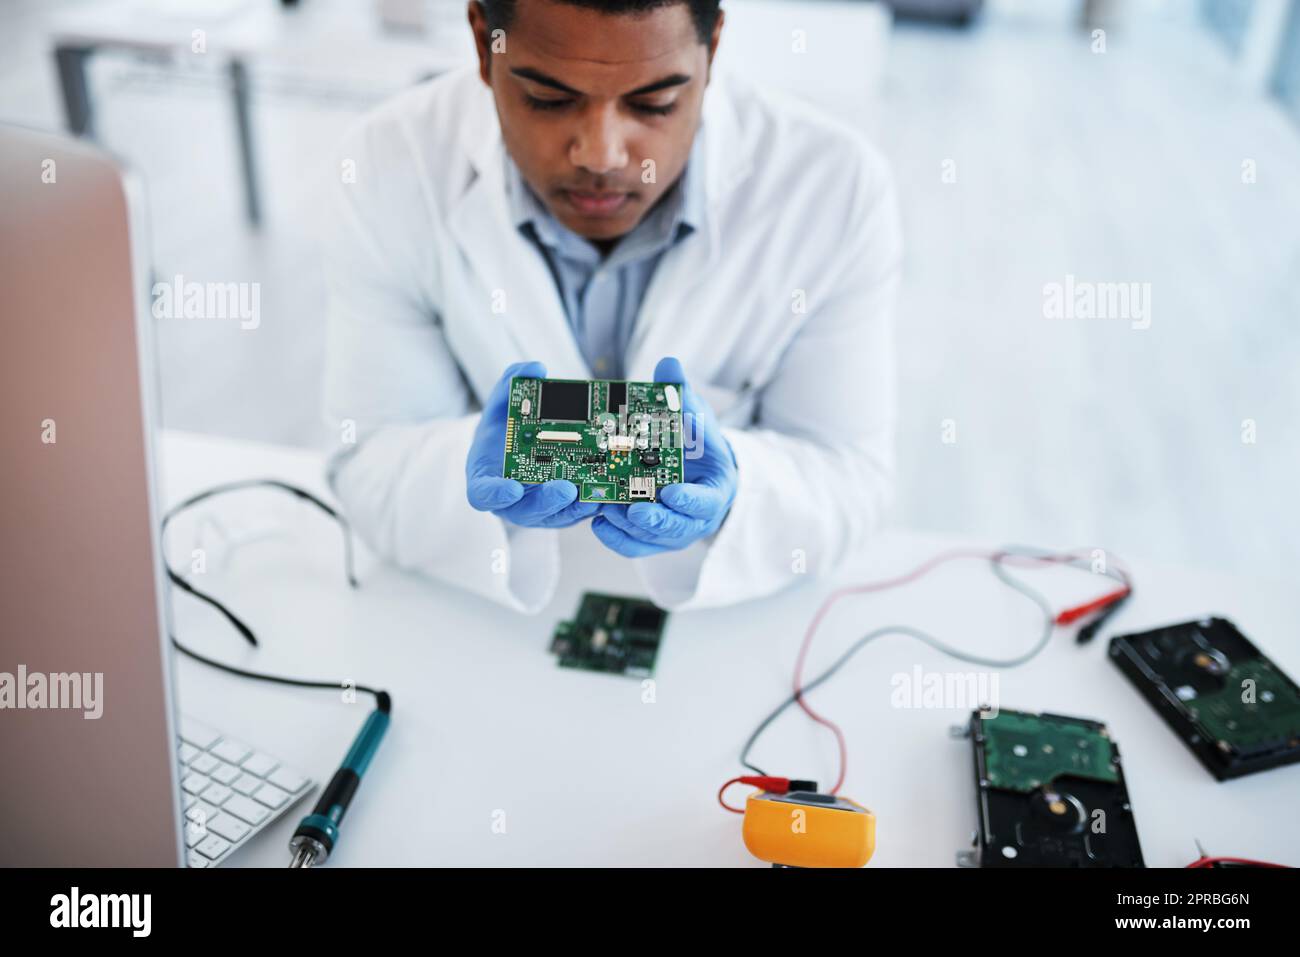 Ils ne l'appellent pas le pro pour rien. Un jeune homme qui répare du matériel informatique dans un laboratoire. Banque D'Images